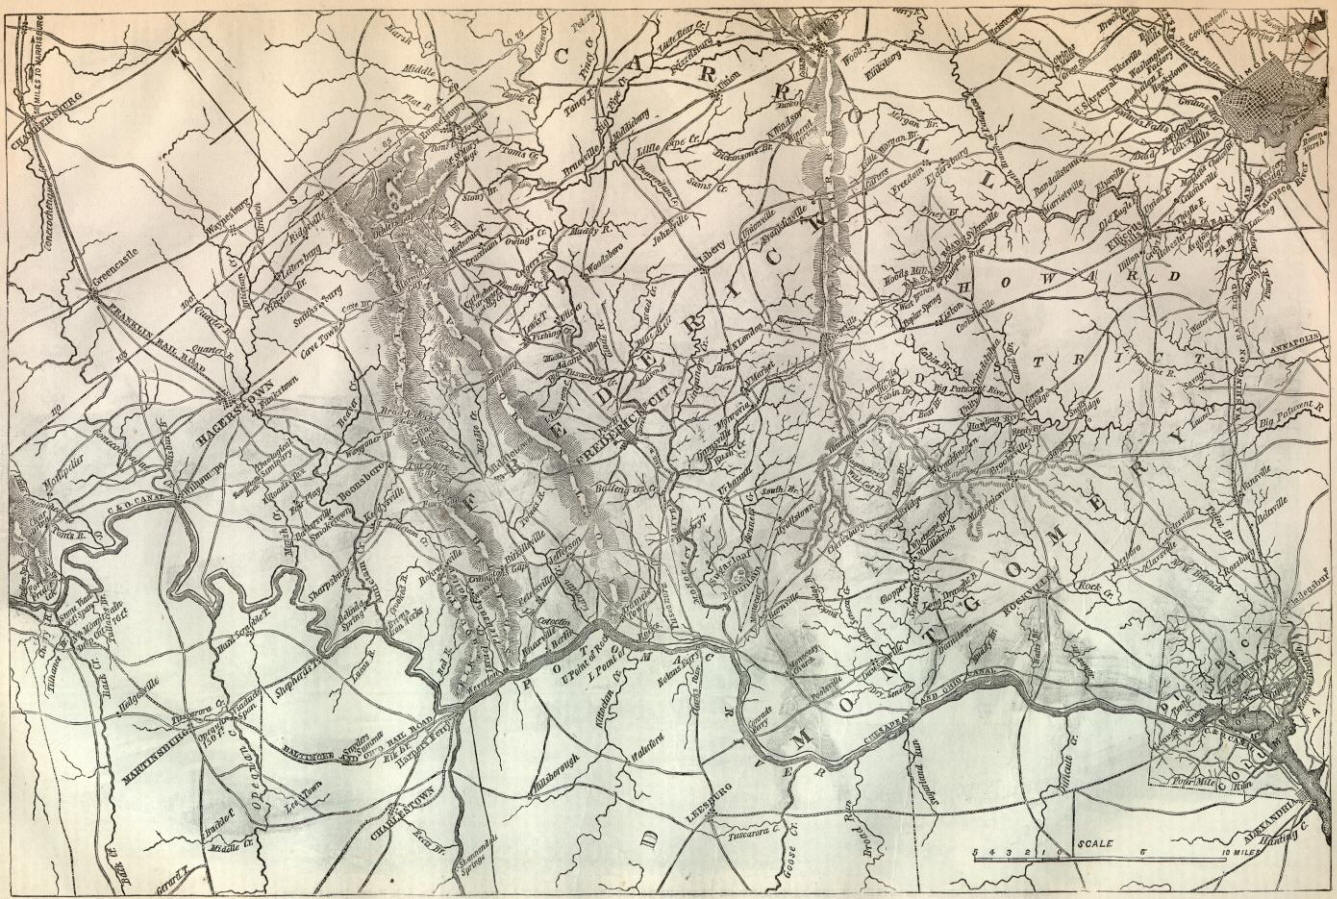 Pennsylvania Battle Map